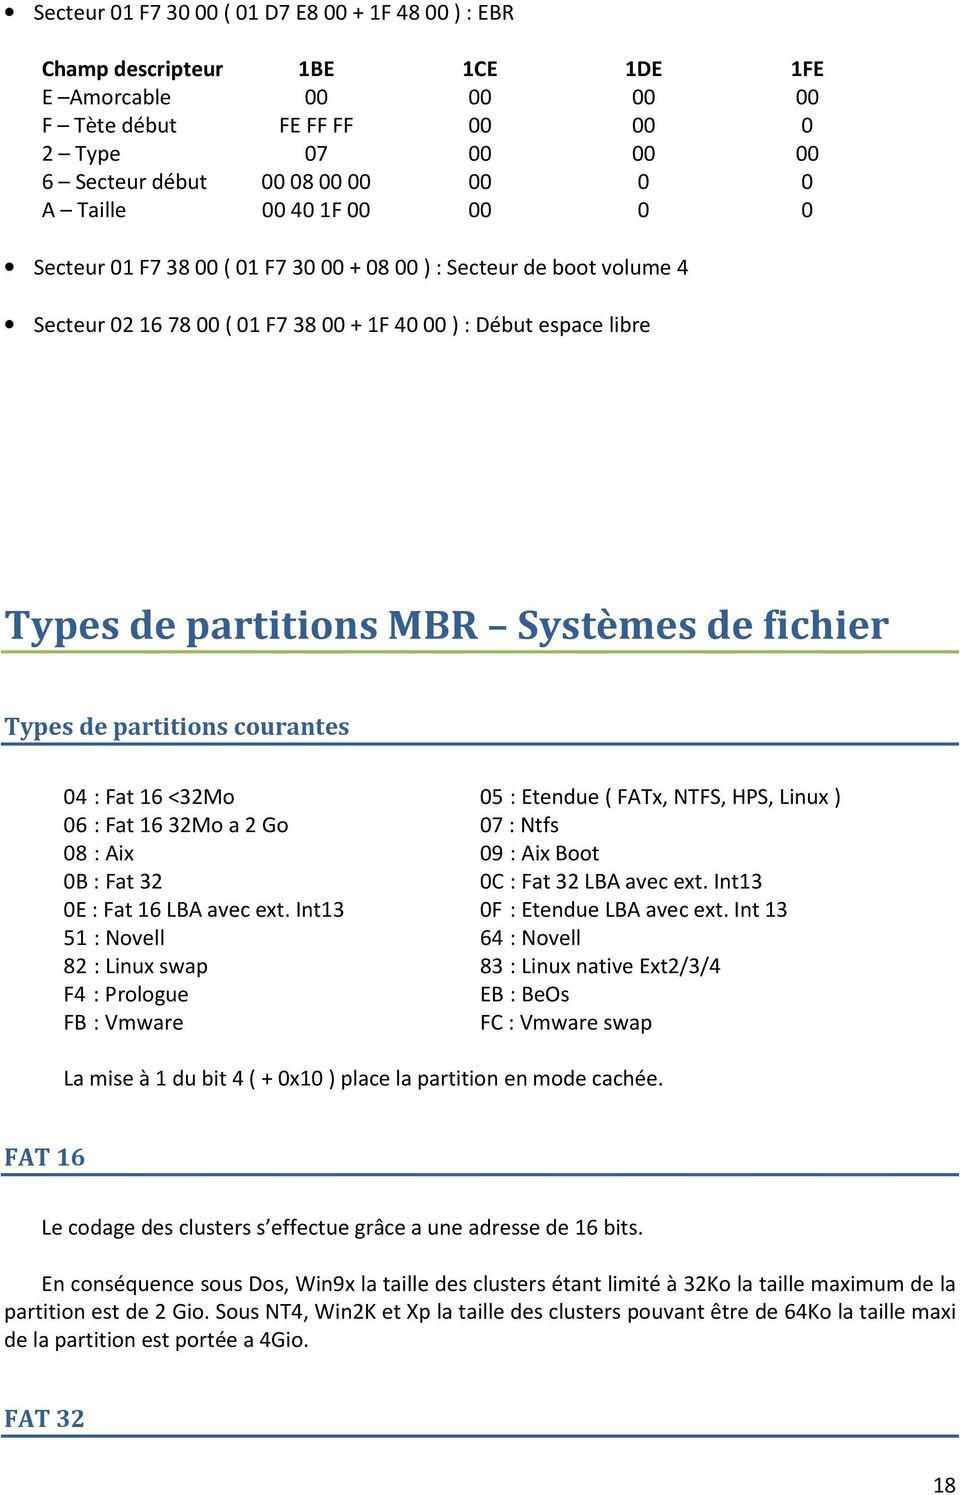 fichier Types de partitions courantes 04 : Fat 16 <32Mo 05 : Etendue ( FATx, NTFS, HPS, Linux ) 06 : Fat 1632Mo a 2 Go 07 : Ntfs 08 : Aix 09 : Aix Boot 0B : Fat 32 0C : Fat 32 LBA avec ext.